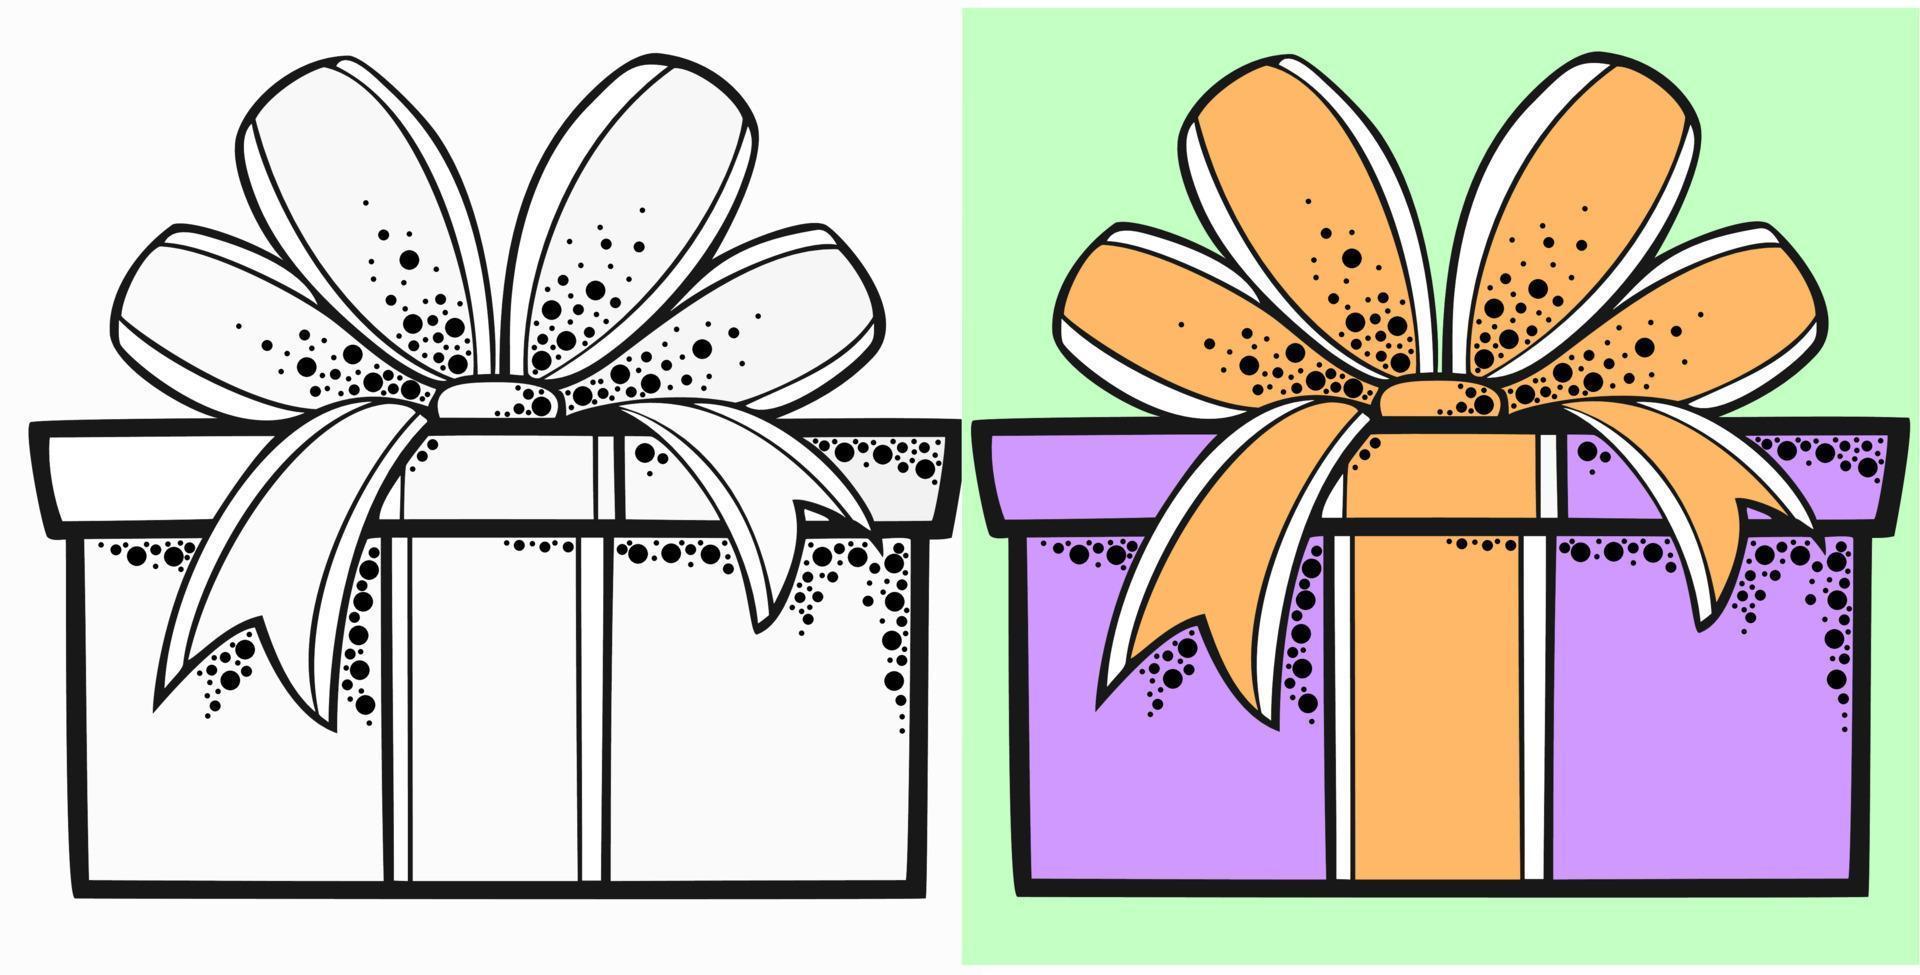 eine reihe festlicher geschenkboxen mit schleife und band, monochrome illustration und farbe vektor